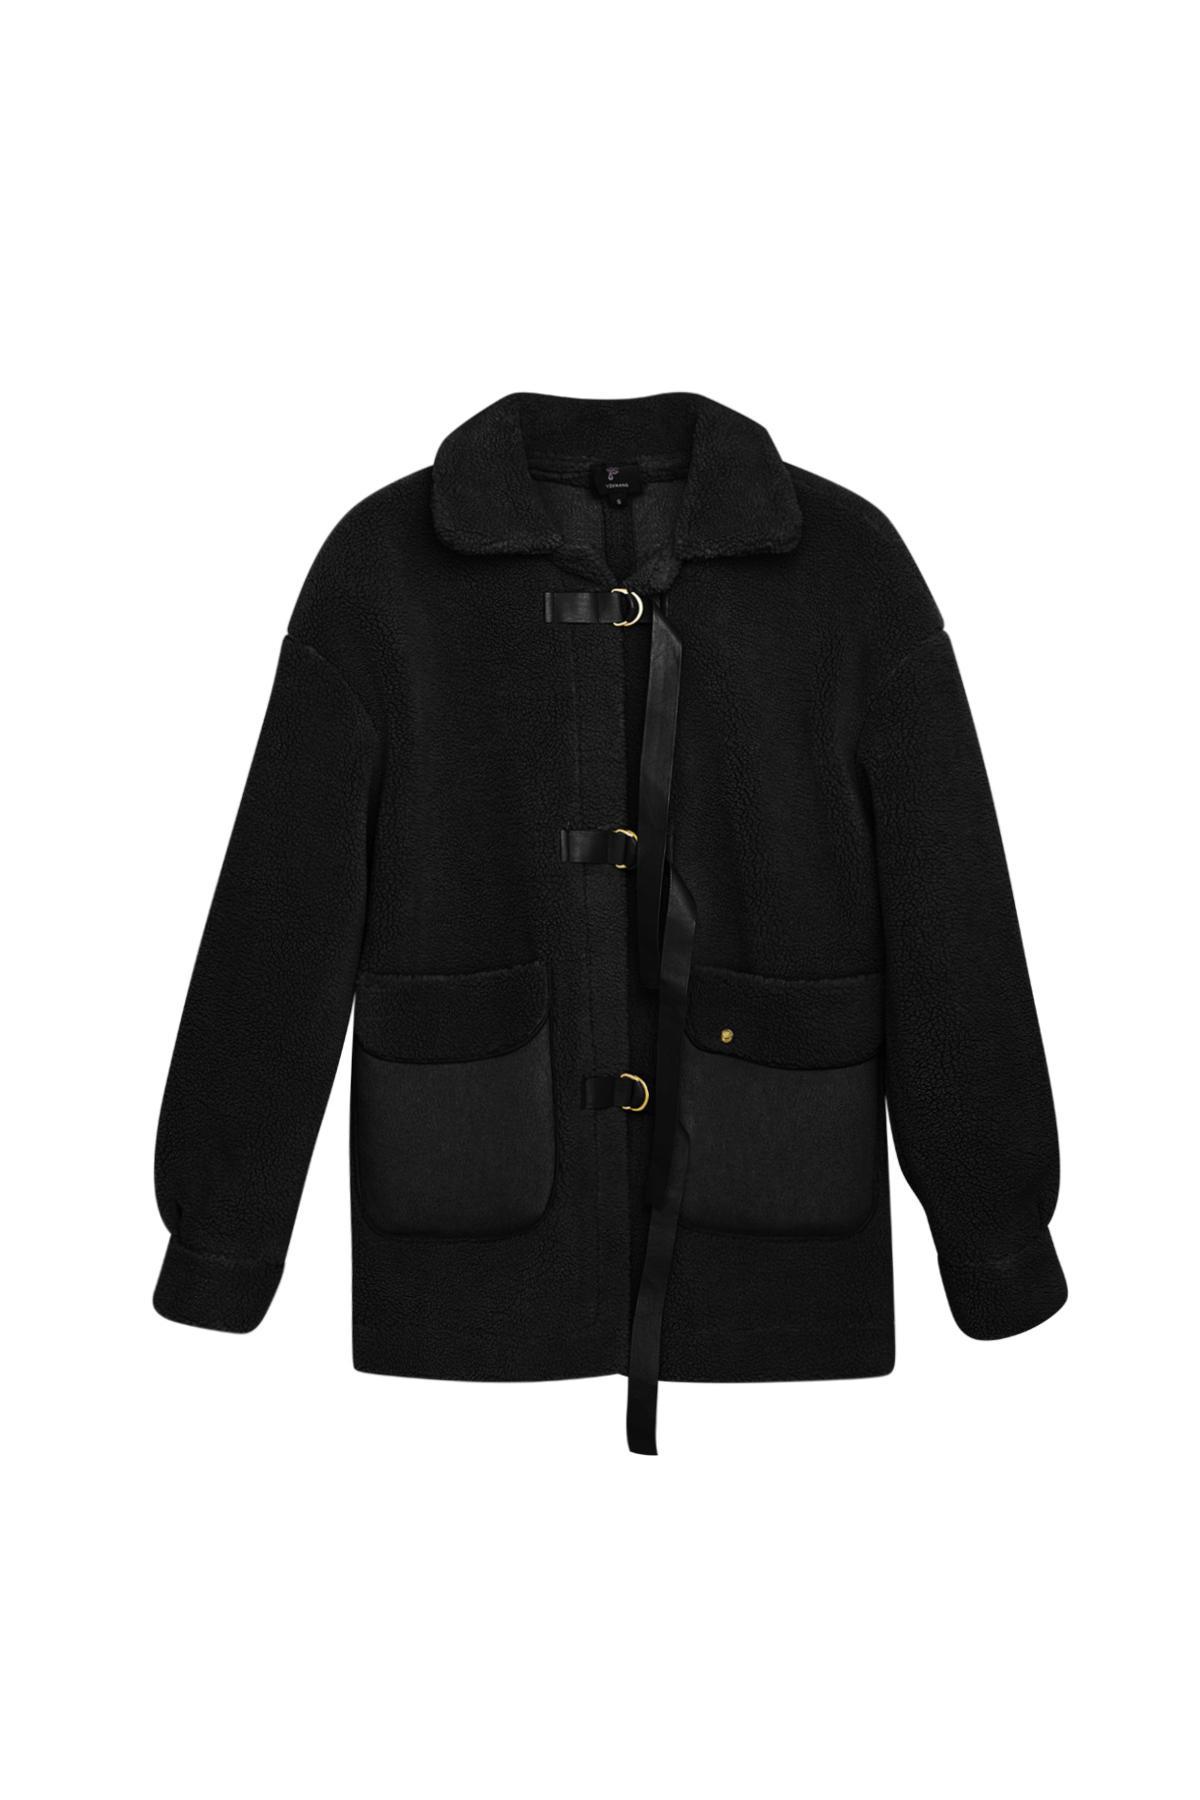 Oyuncak ceket - Siyah Black M h5 